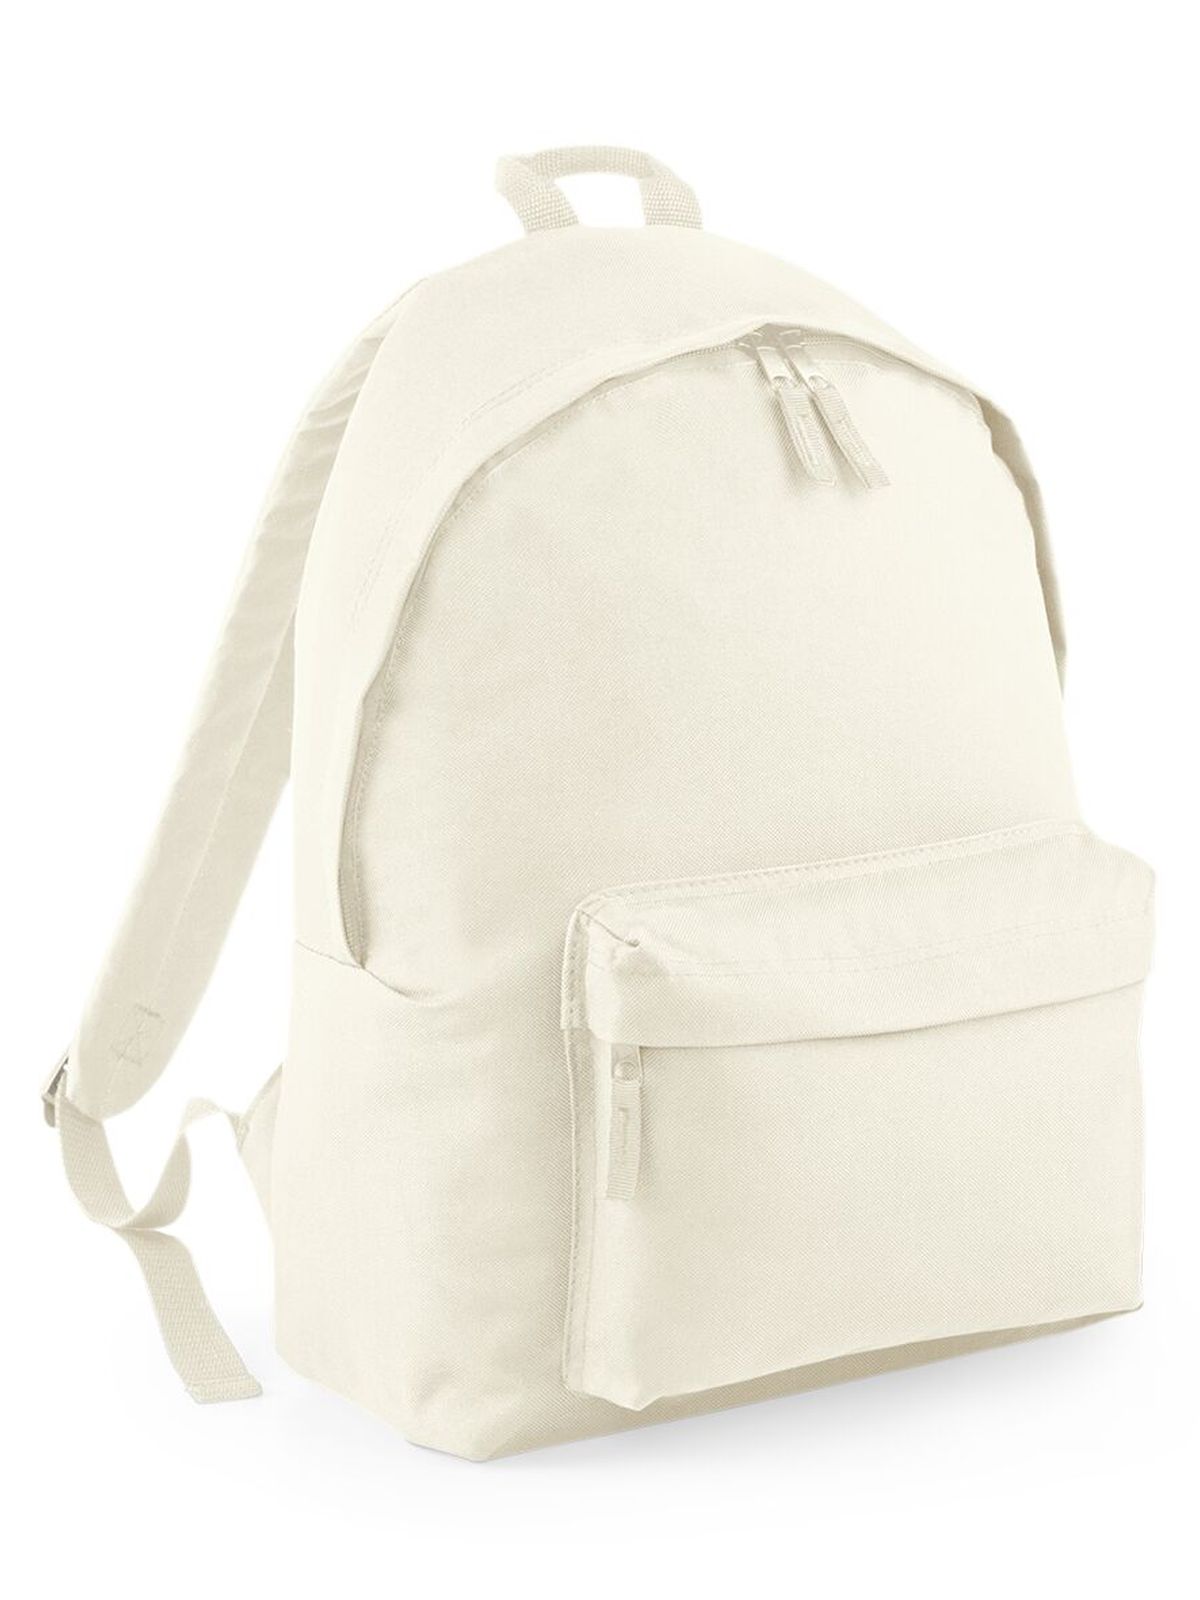 original-fashion-backpack-natural-natural.webp